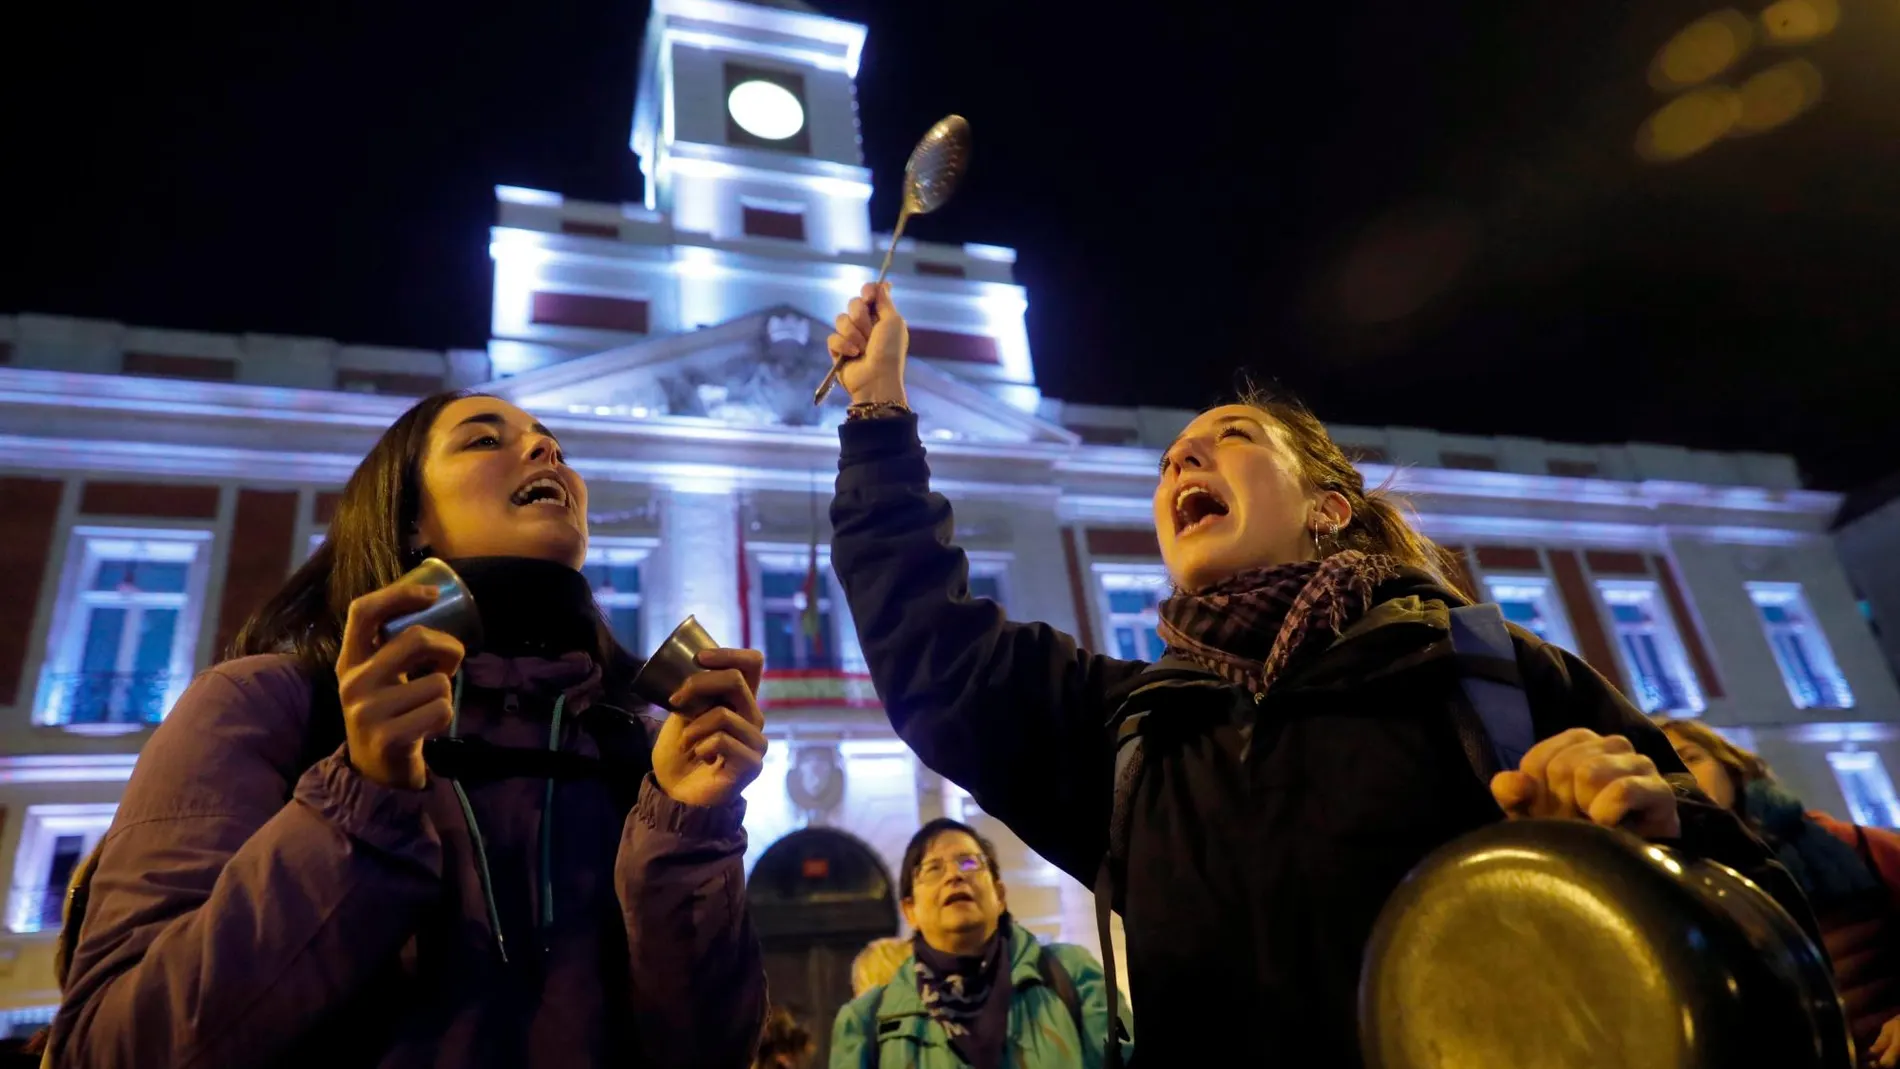 Cacerolada celebrada esta noche en la Puerta del Sol, en Madrid, que sirve de inicio a la jornada de huelga feminista